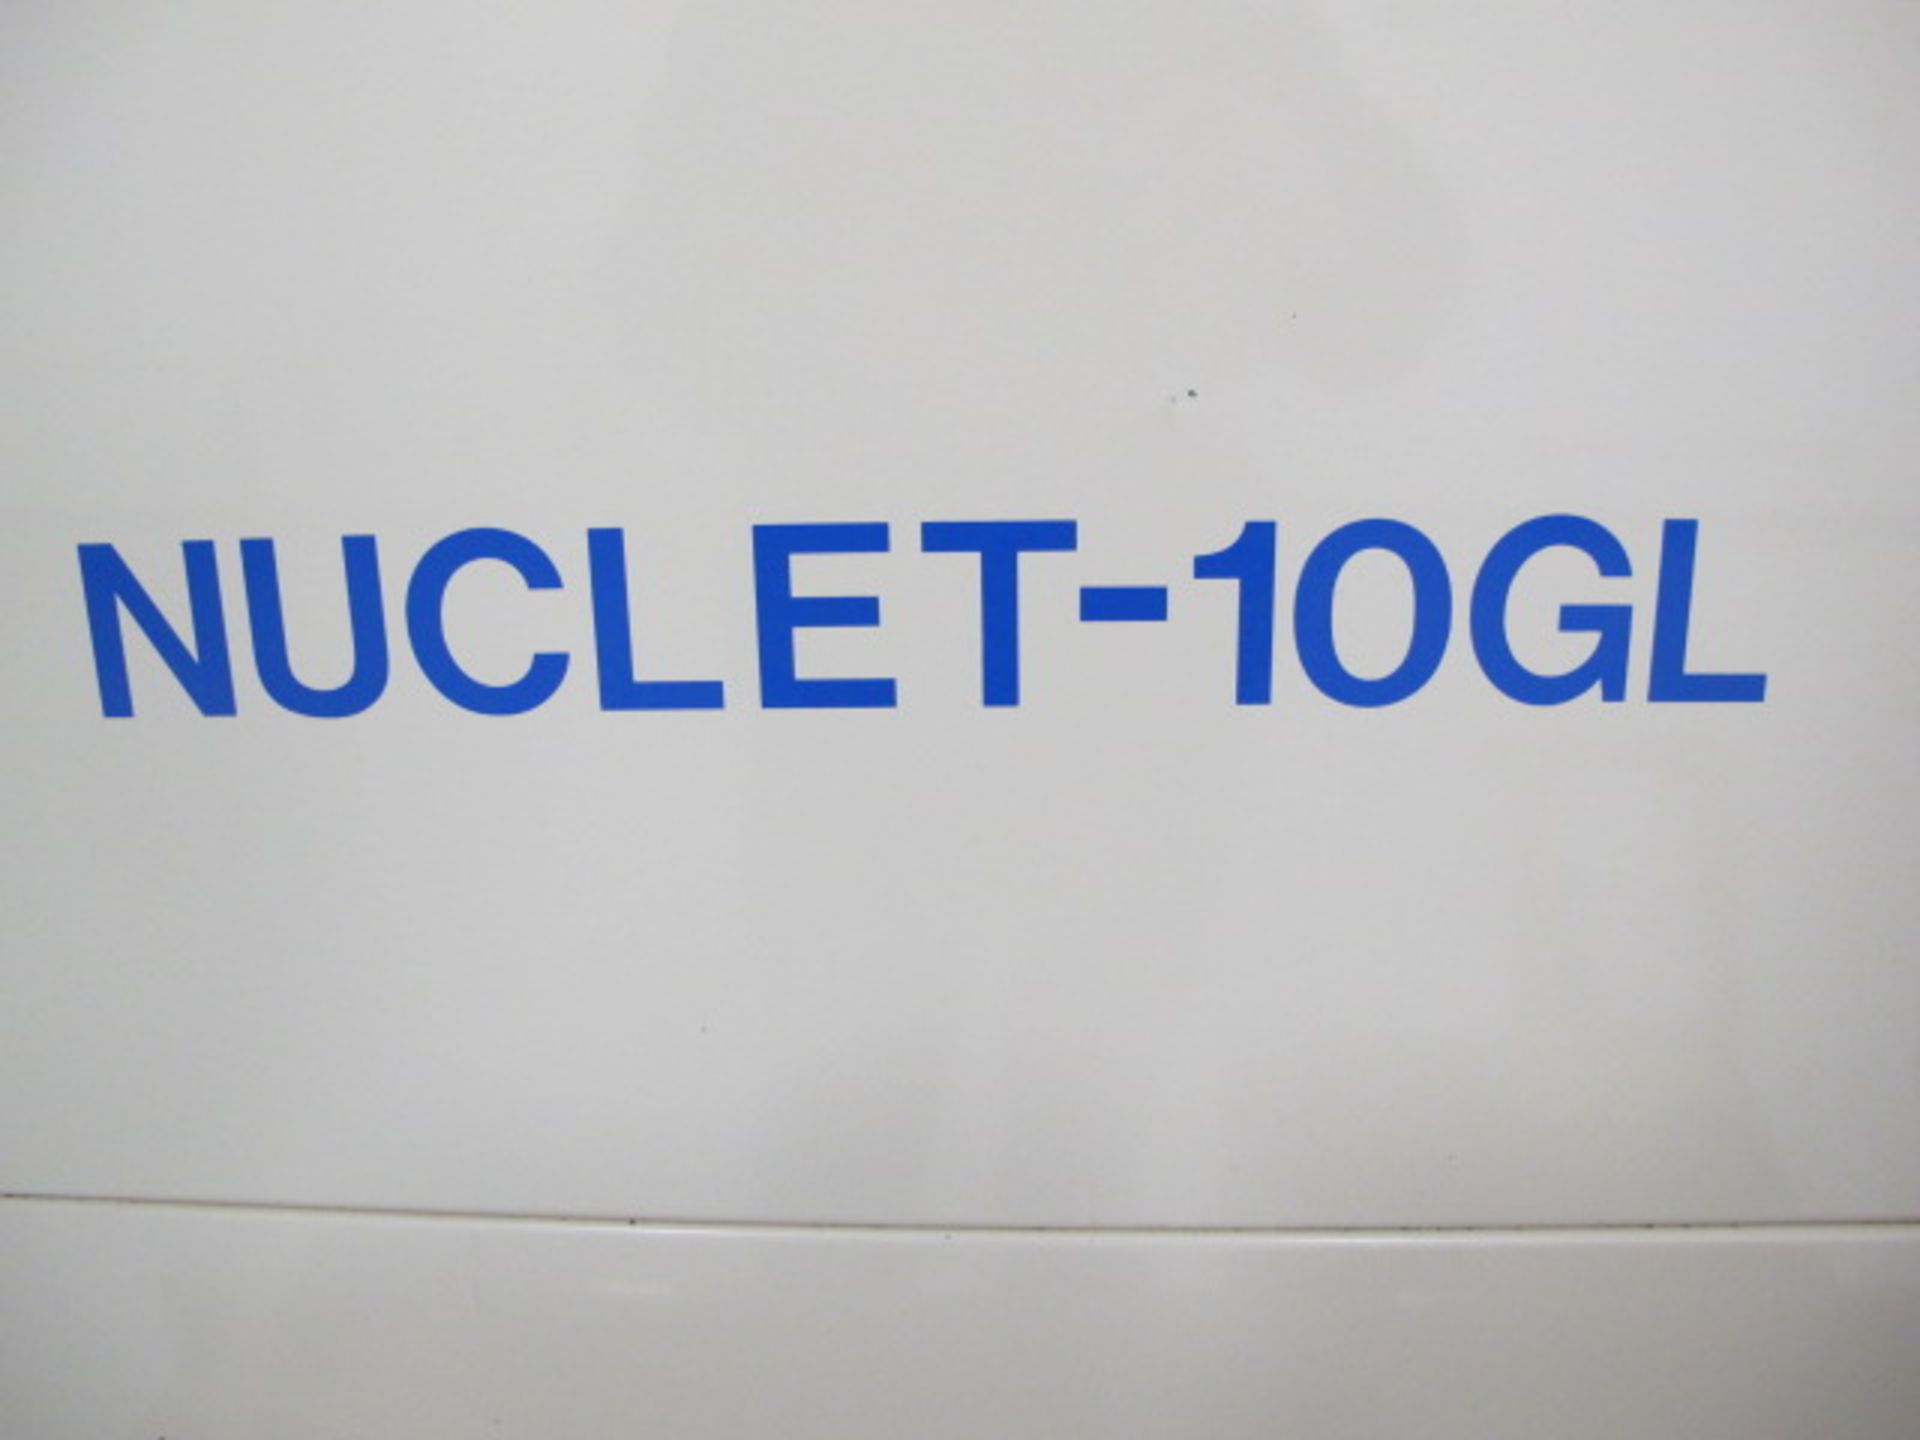 2000 Eguro Nuclet-10GL CNC Gang Tooling Cross Slide Lathe s/n 4161 w/ Fanuc Series 21i-T Controls, - Image 5 of 12